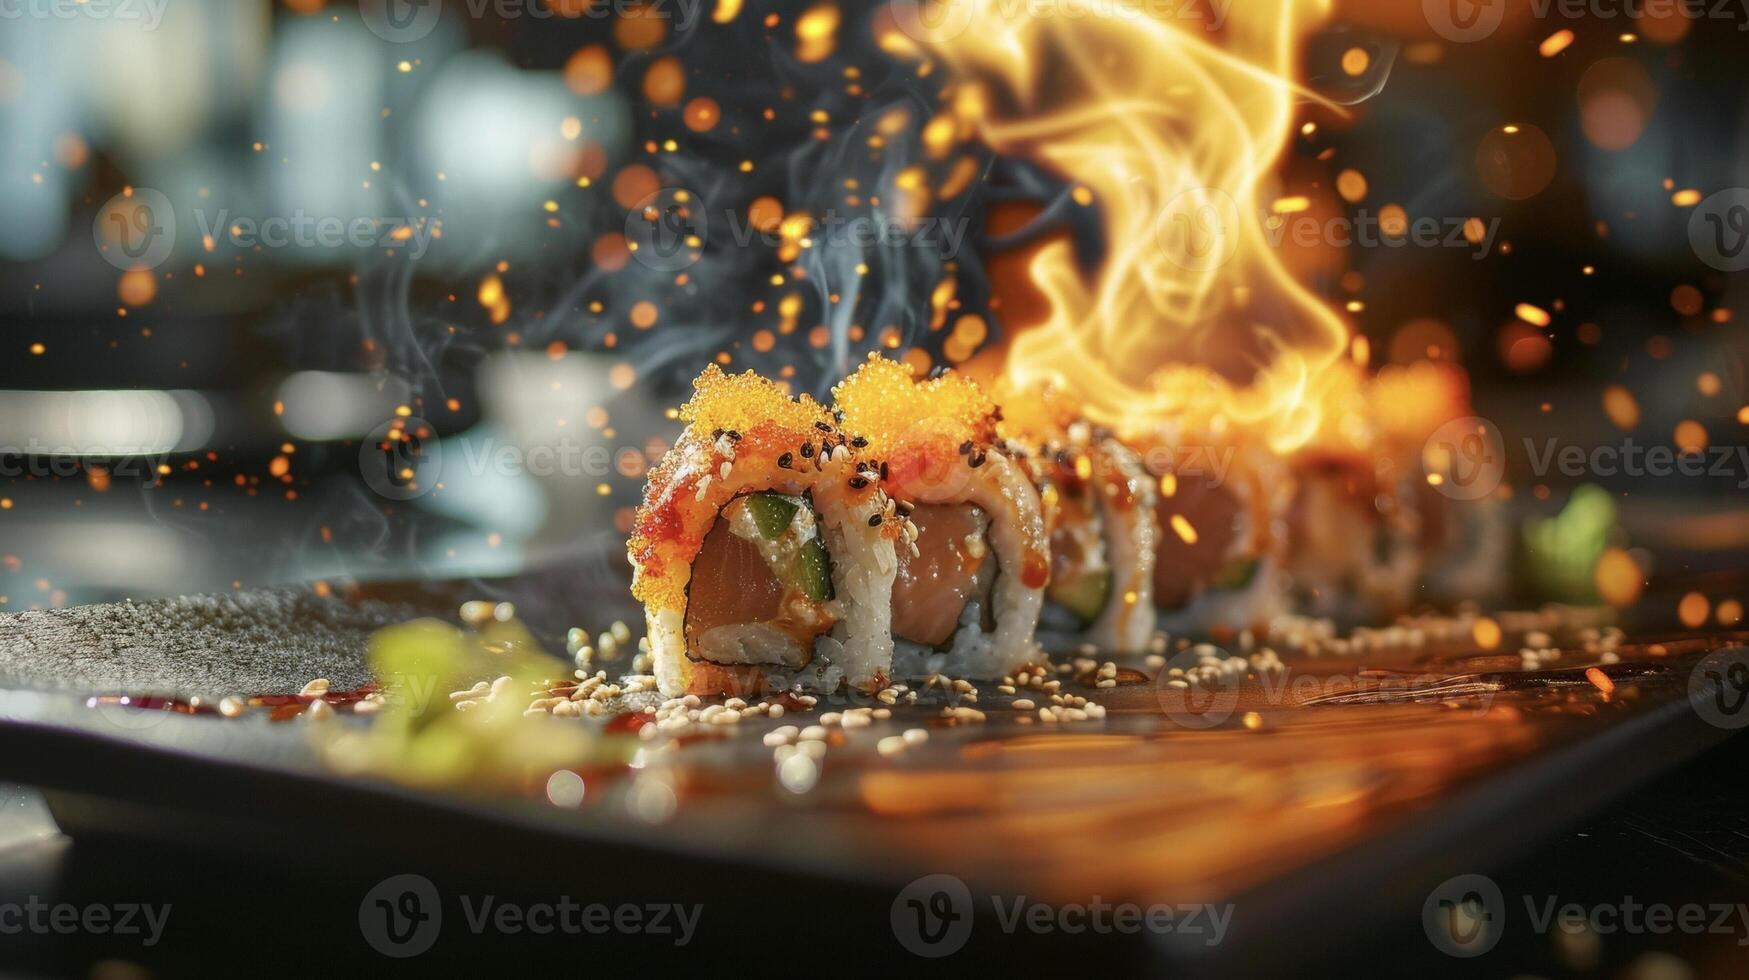 vibrante e saboroso Sushi rolos acompanhado de uma hipnotizante pano de fundo do dançando fogo garantindo uma jantar experiência este vai acender seu gosto brotos foto